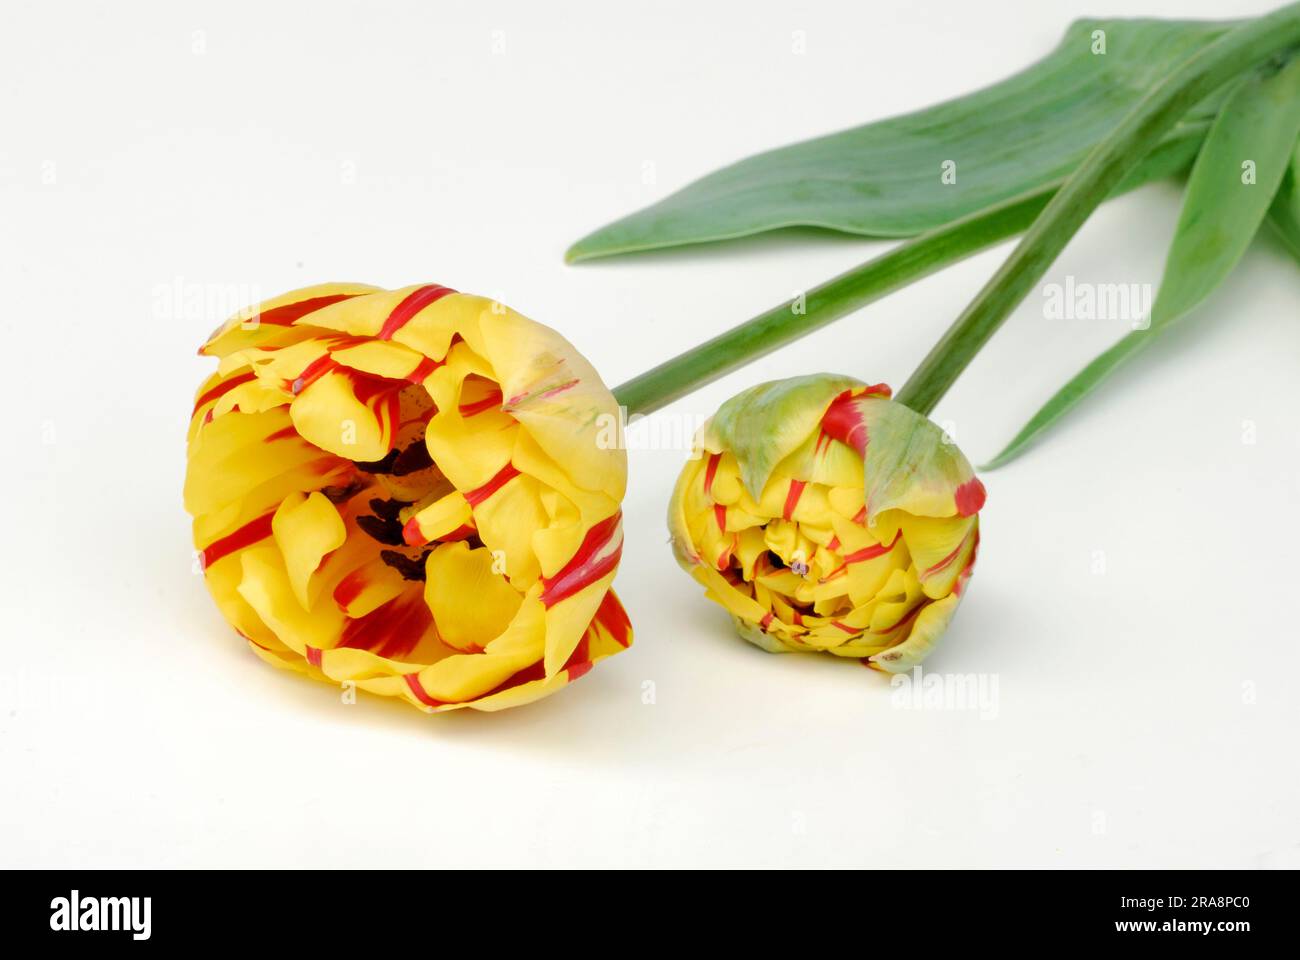 Perroquet tulips 'Golden Nice' Stock Photo